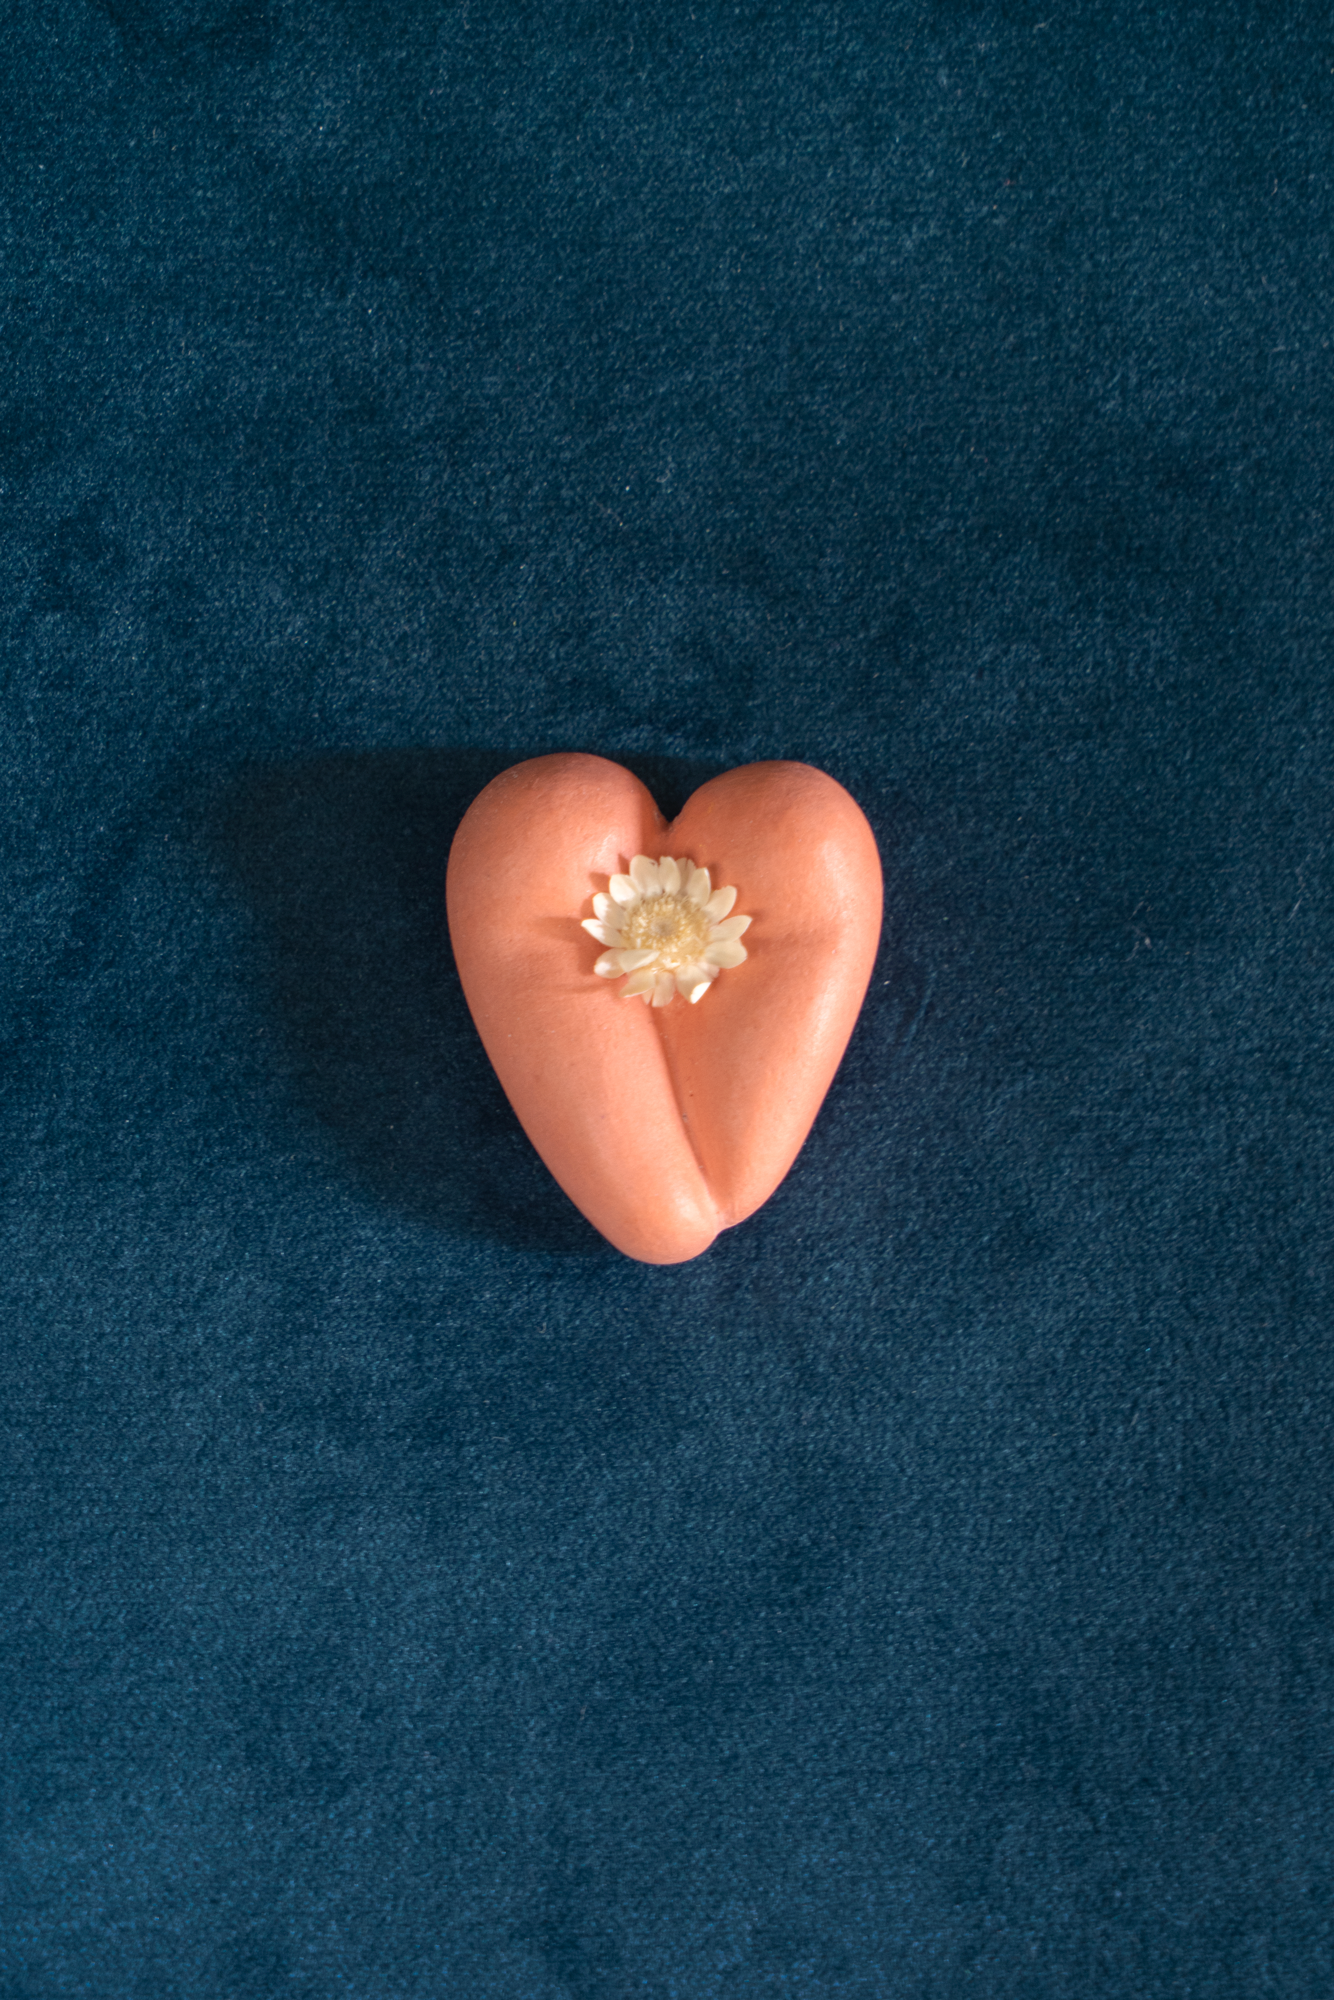 Coeur à nu de Maison Tessier terracotta, fesses en forme de coeur avec petites fleurs séchées, sur tissus velour émeraude